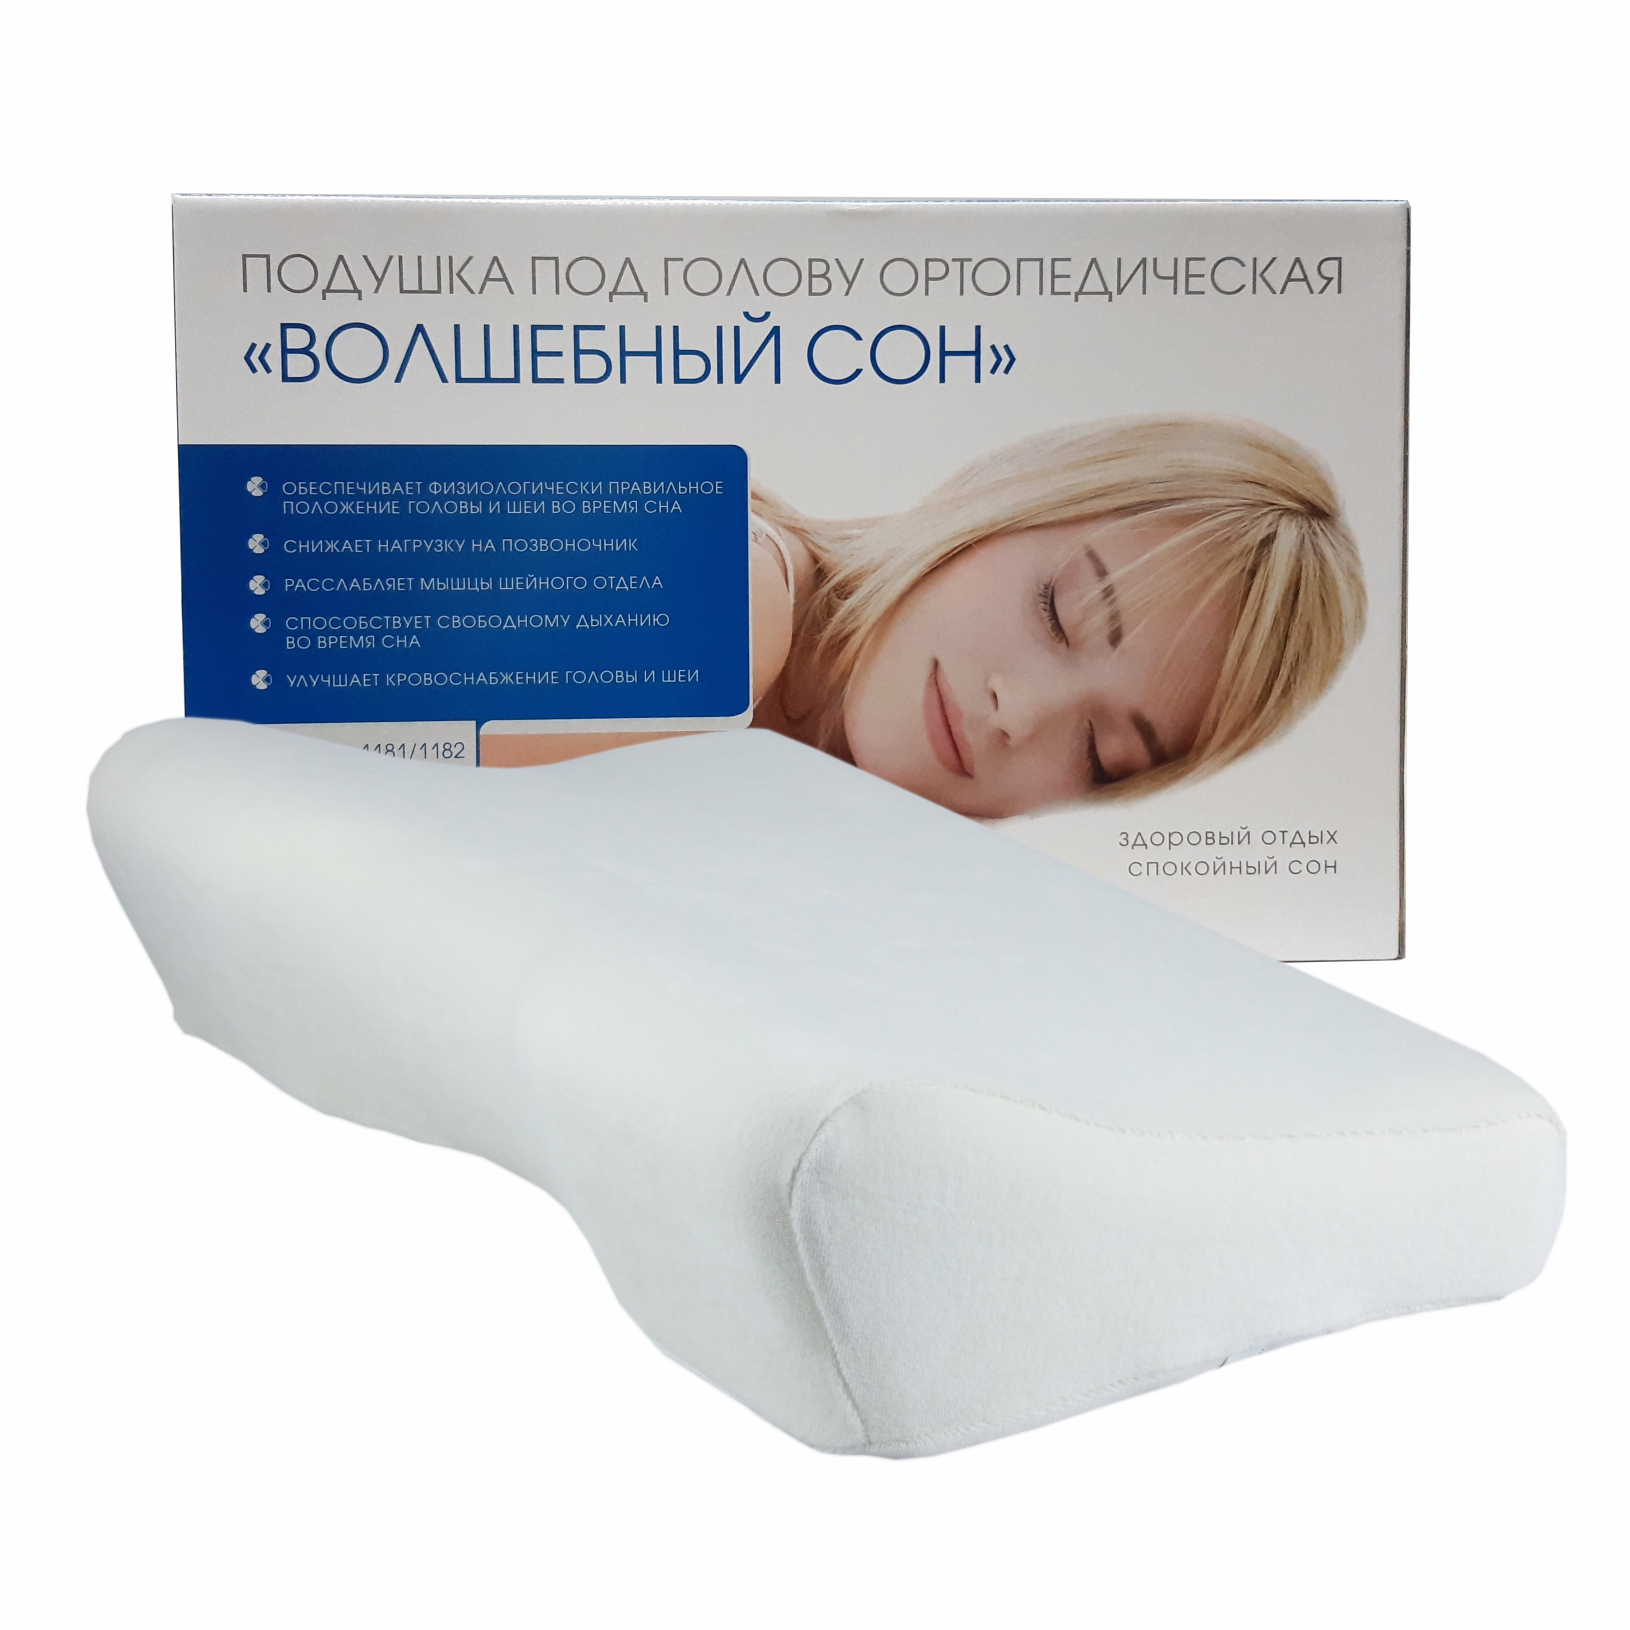 Ортопедические подушки при остеохондрозе шеи - купить в Москве в интернет-магазине Доктор Аль